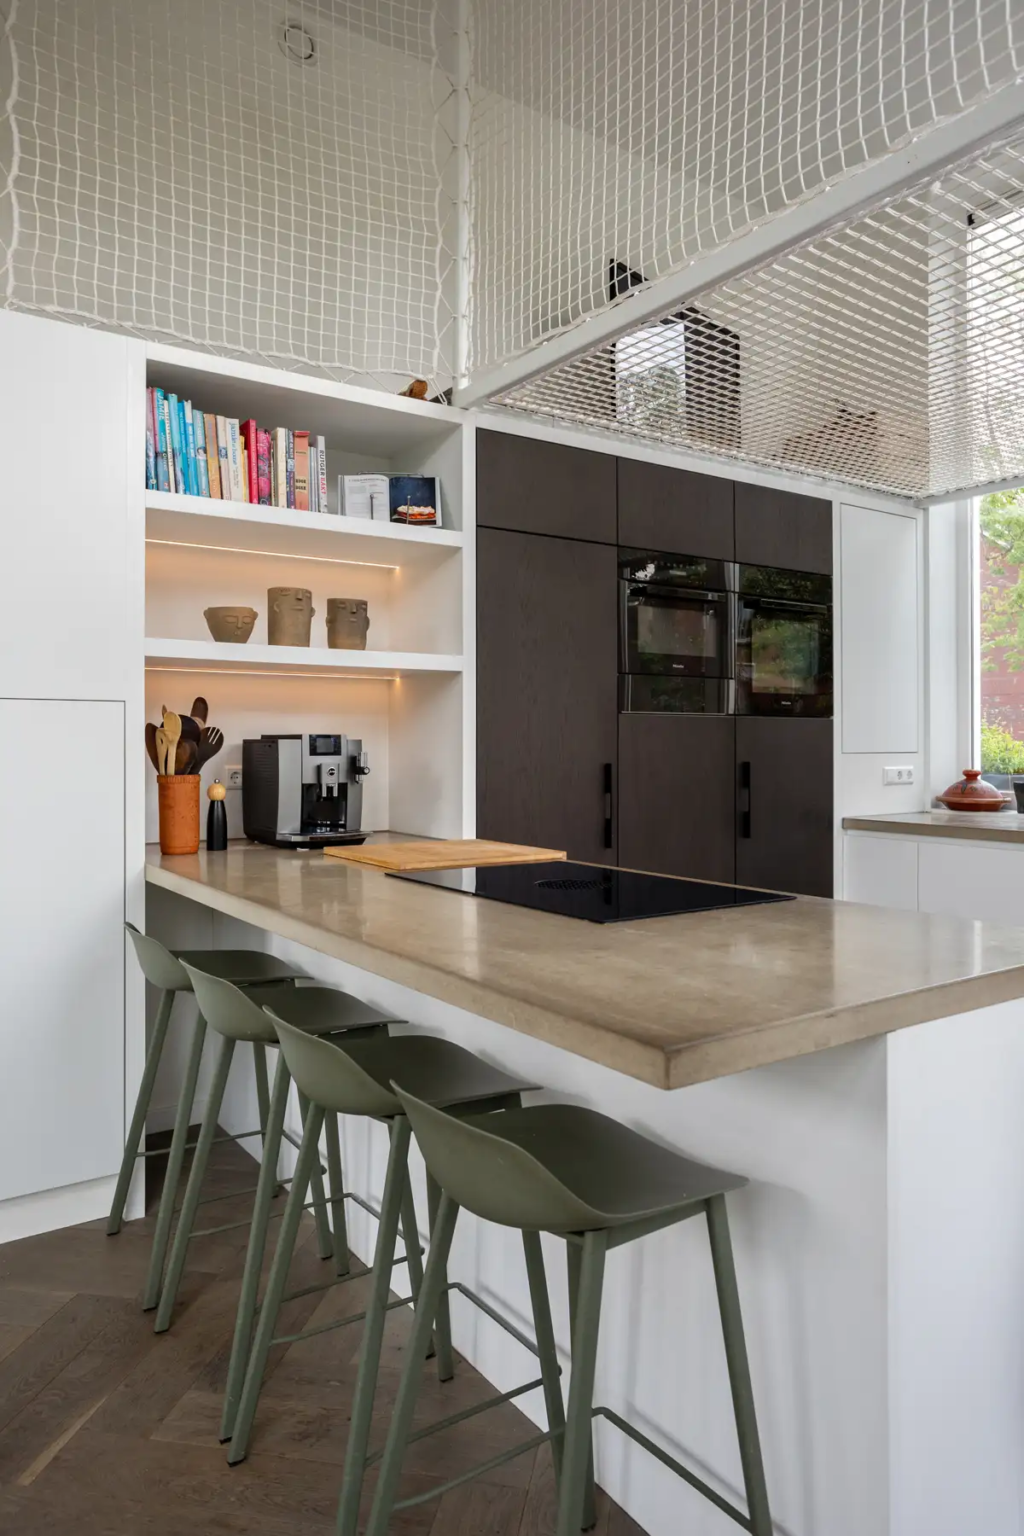 Maatwerk keuken ontworpen en gemaakt door Timmermans interieurbouw